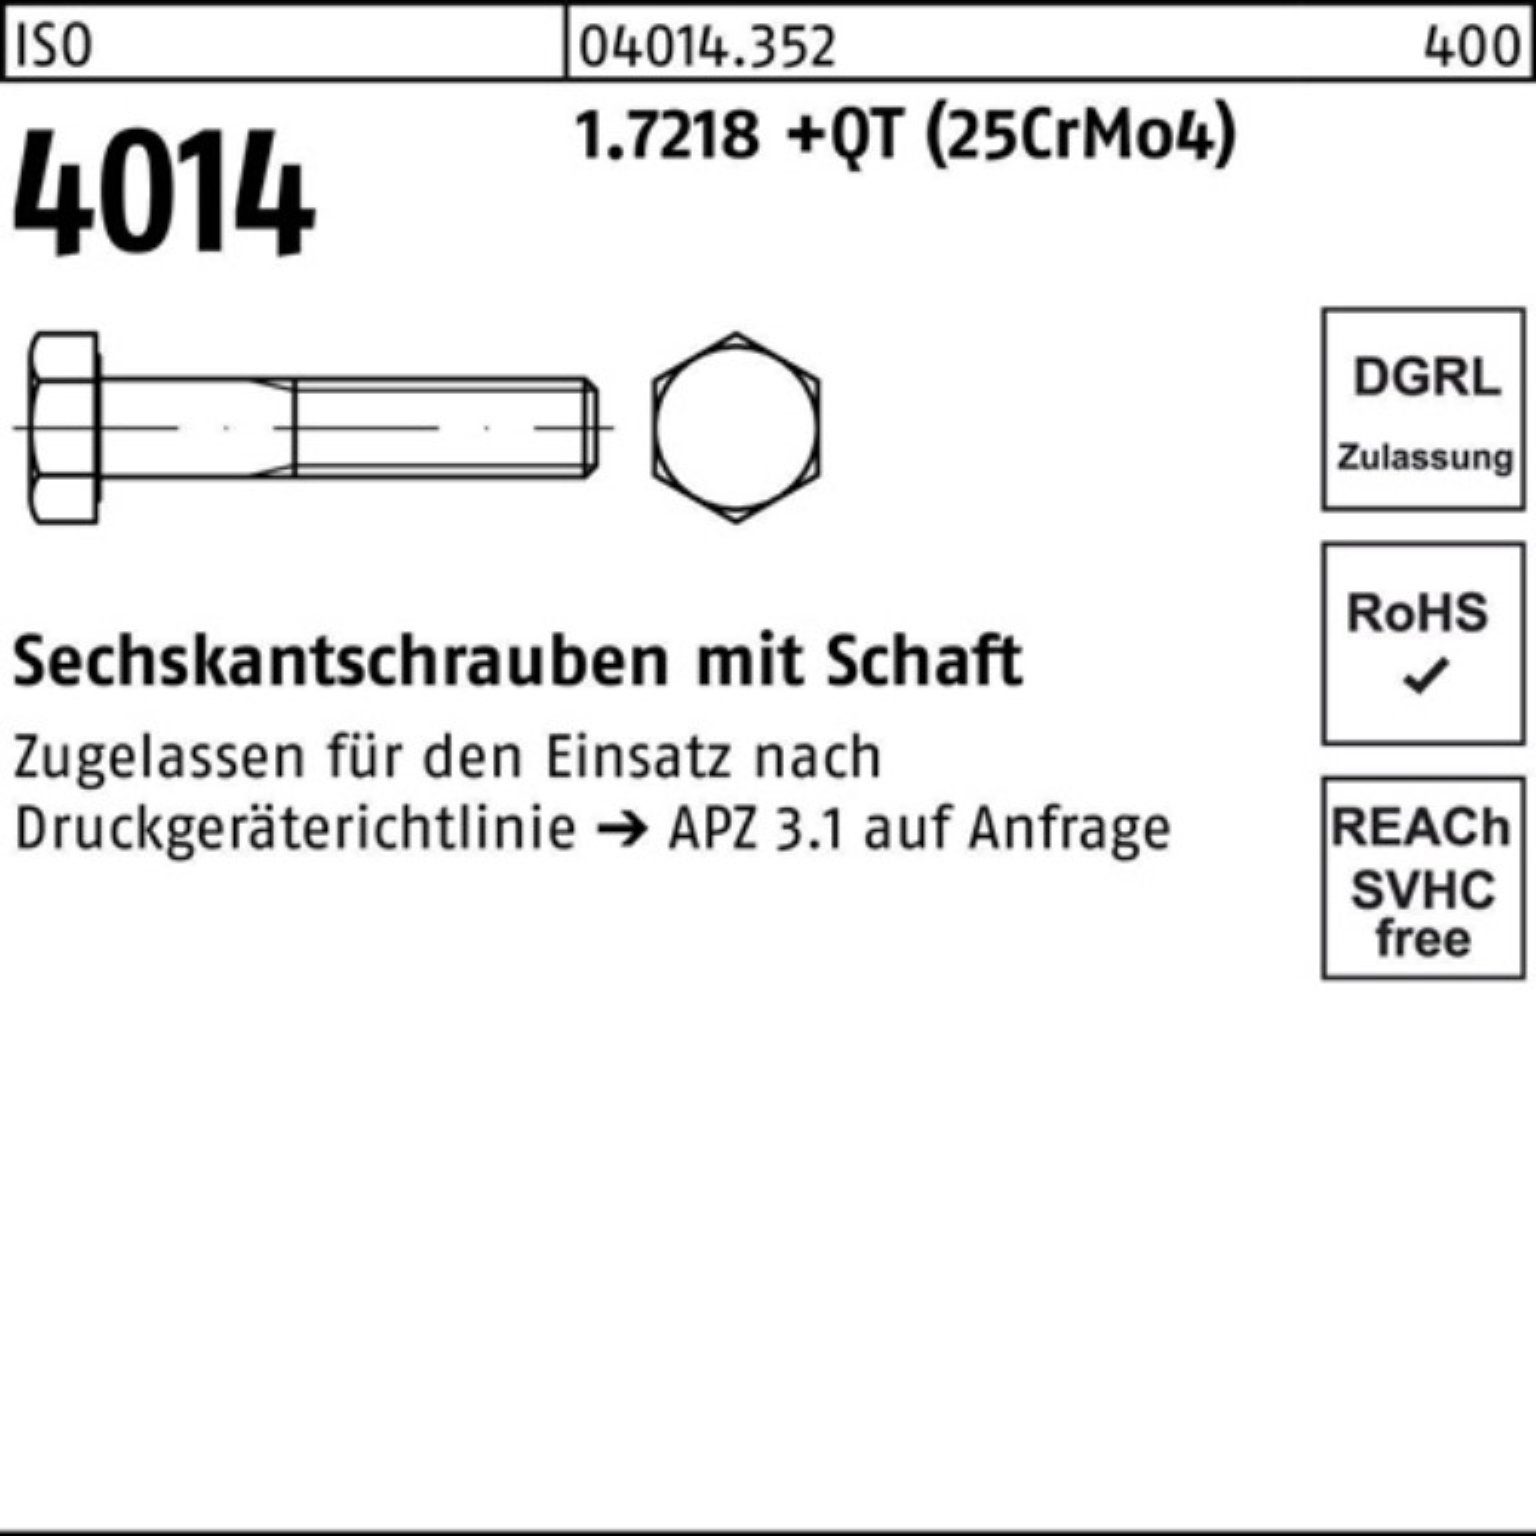 Pack Sechskantschraube Bufab 4014 Sechskantschraube +QT Schaft ISO (25Cr 1.7218 110 100er M16x